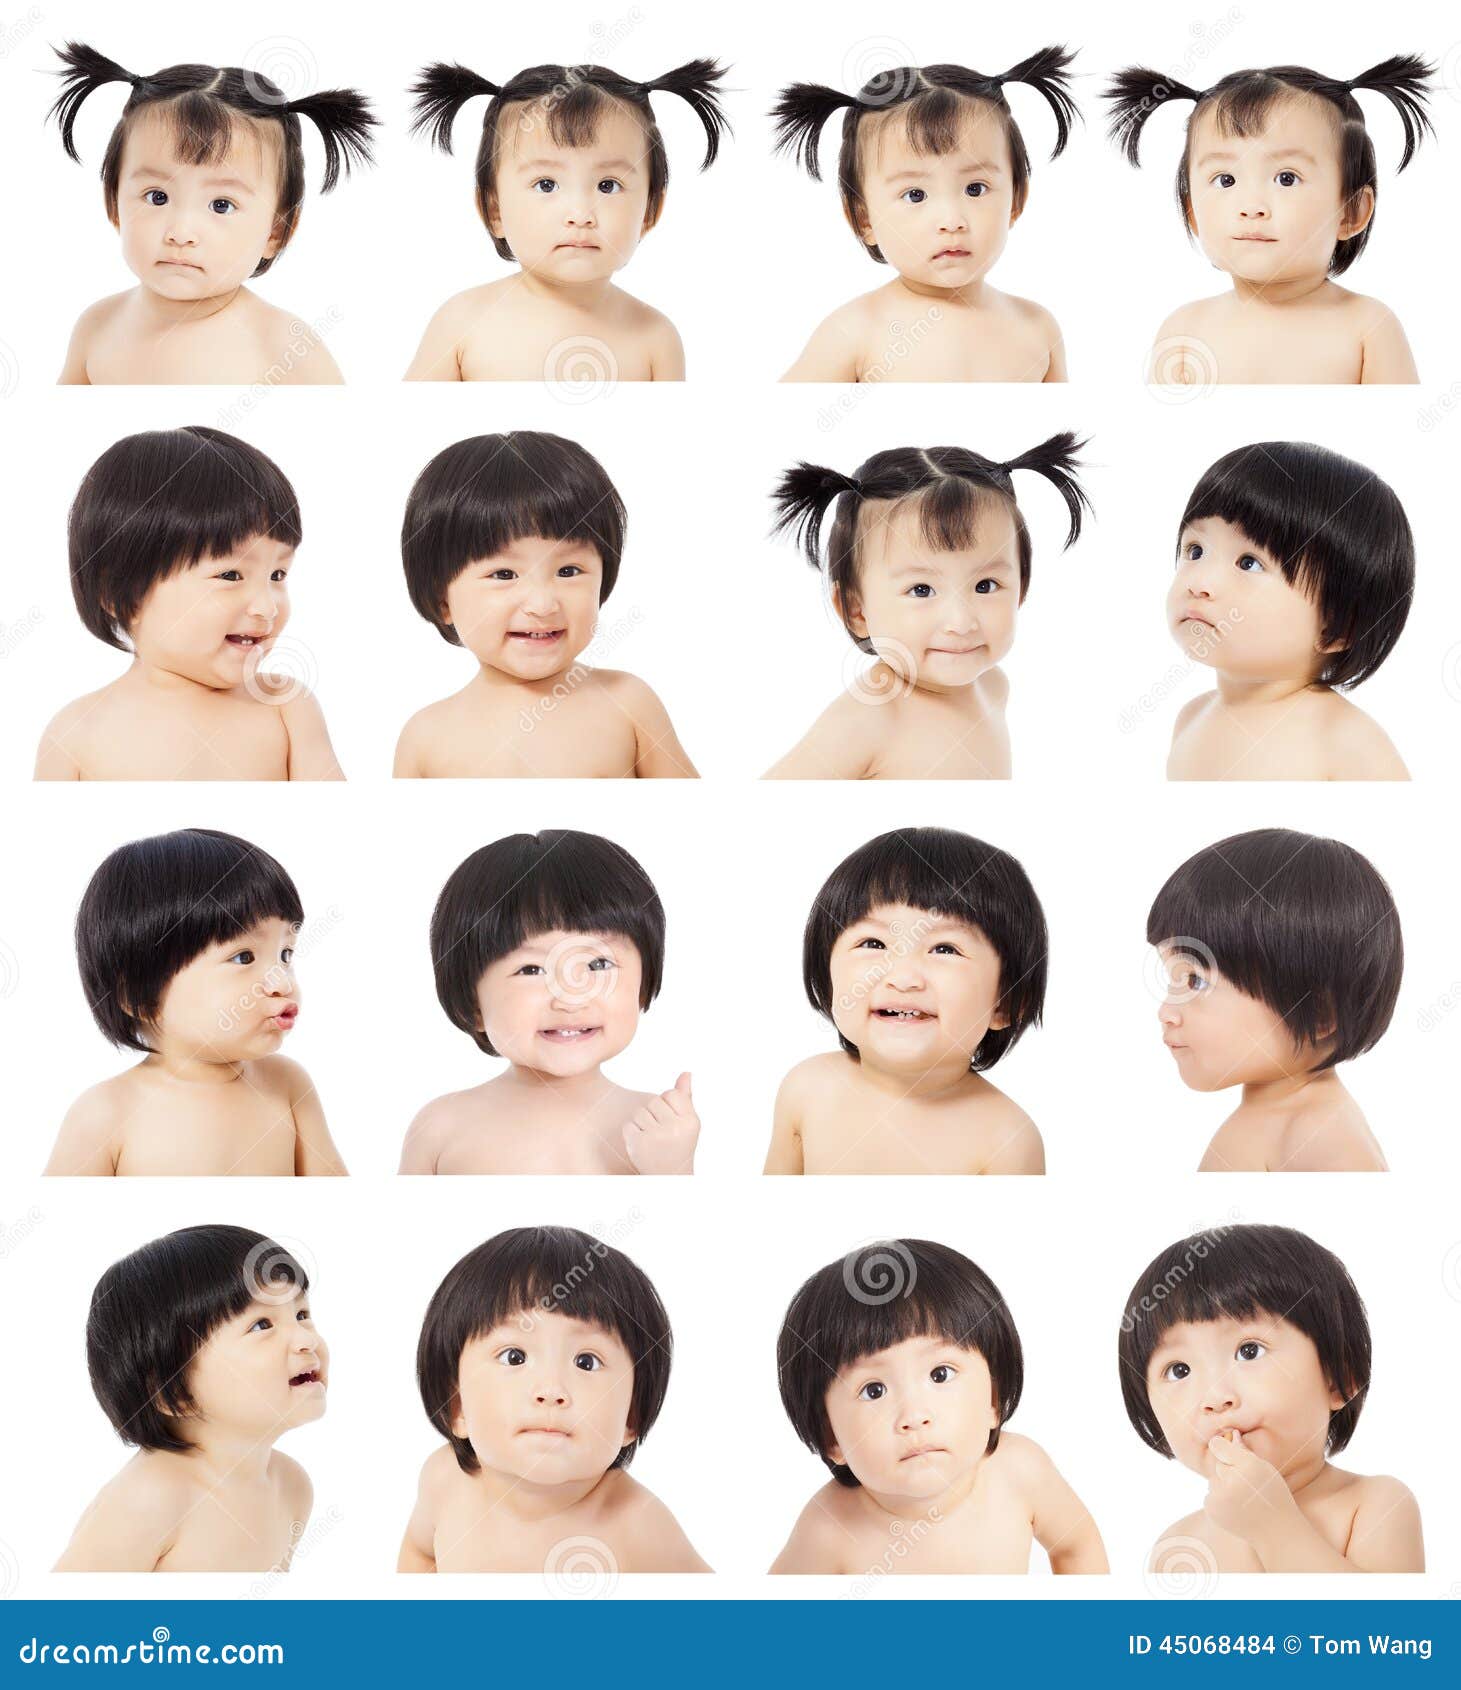 Bébé mignon asiatique faisant différentes expressions du visage au-dessus du fond blanc